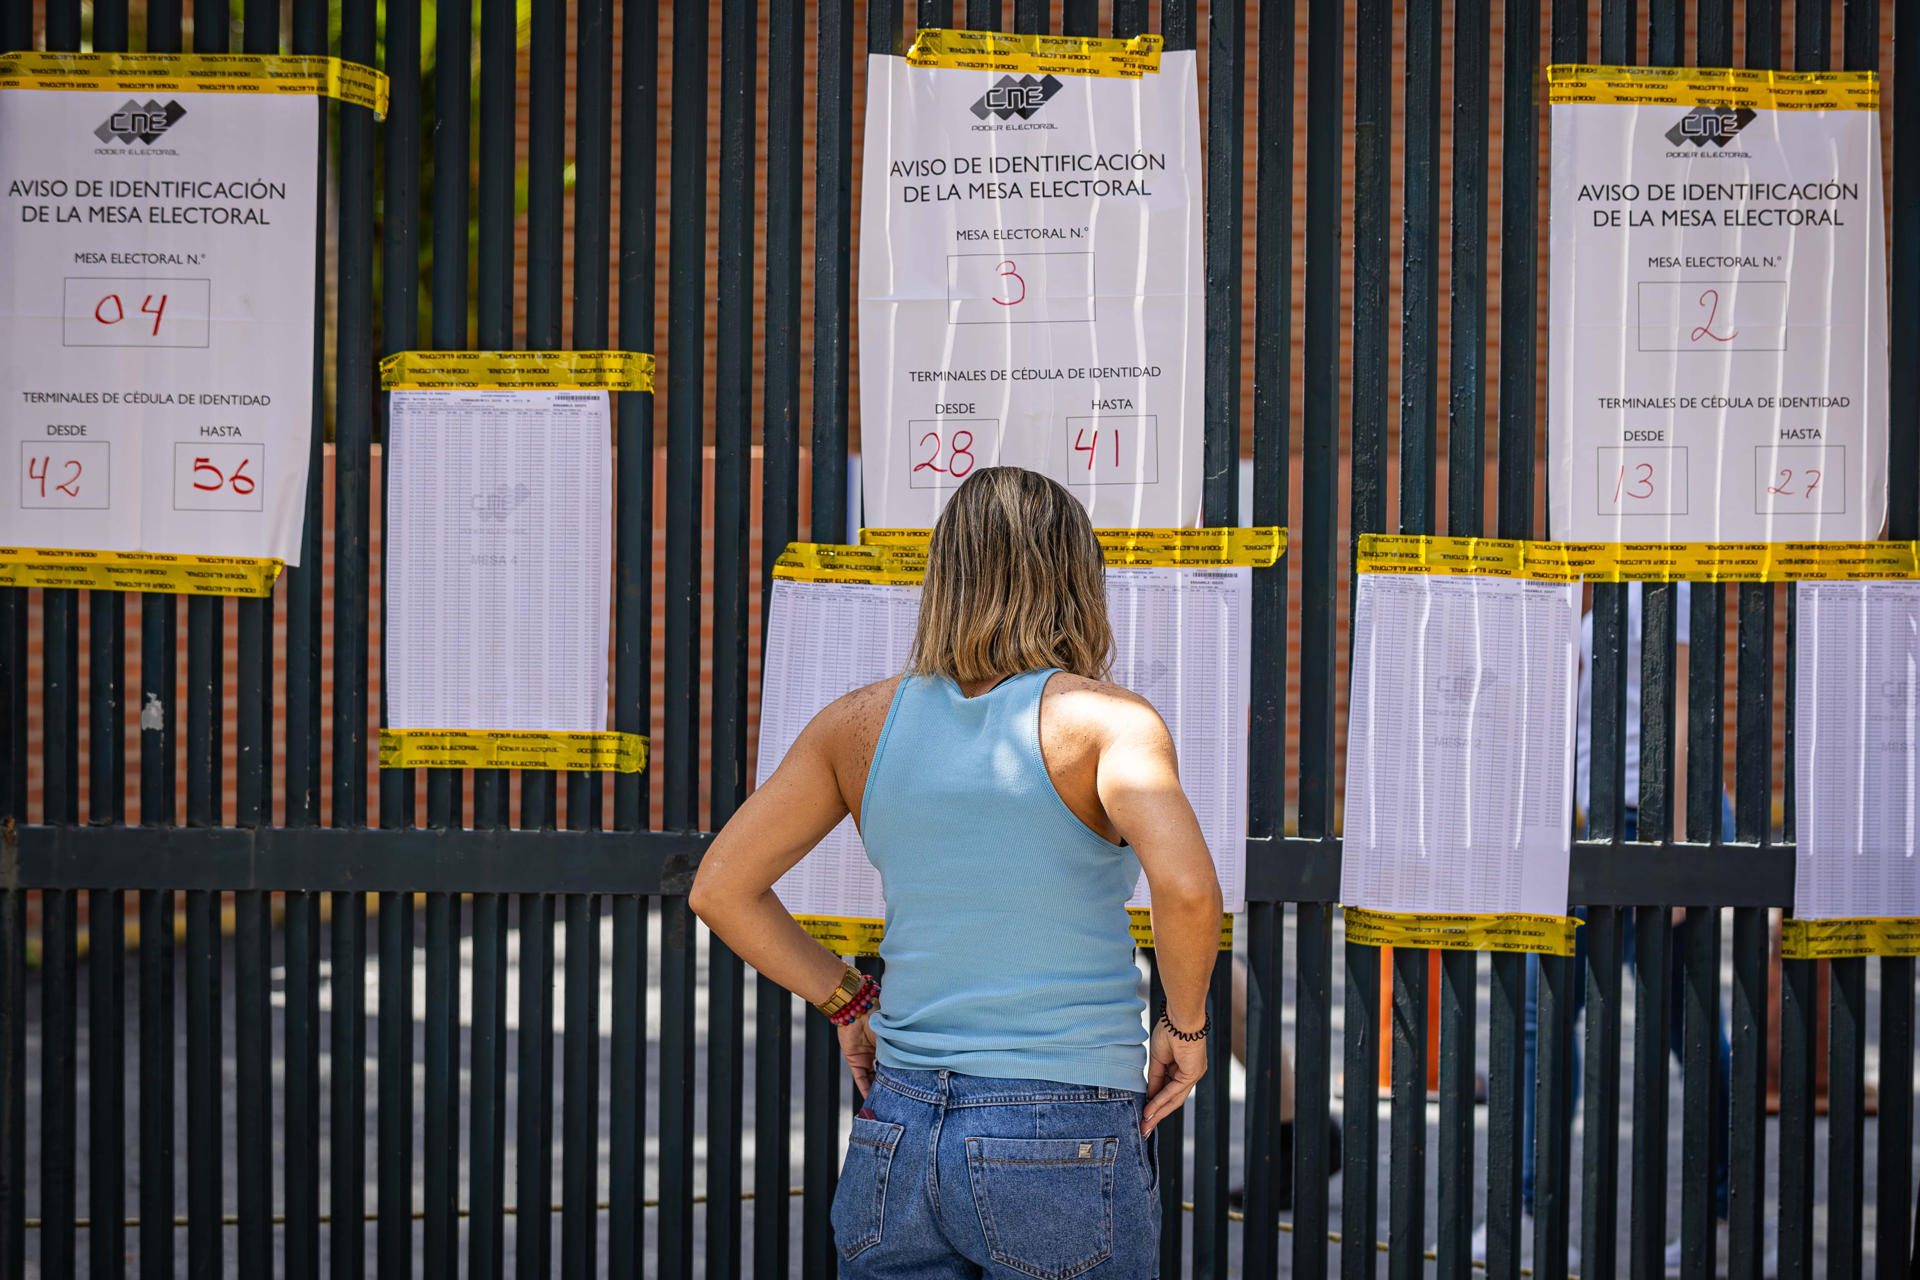 Revisión de AP a actas de la oposición expone serias dudas sobre los resultados de la elección presidencial en Venezuela